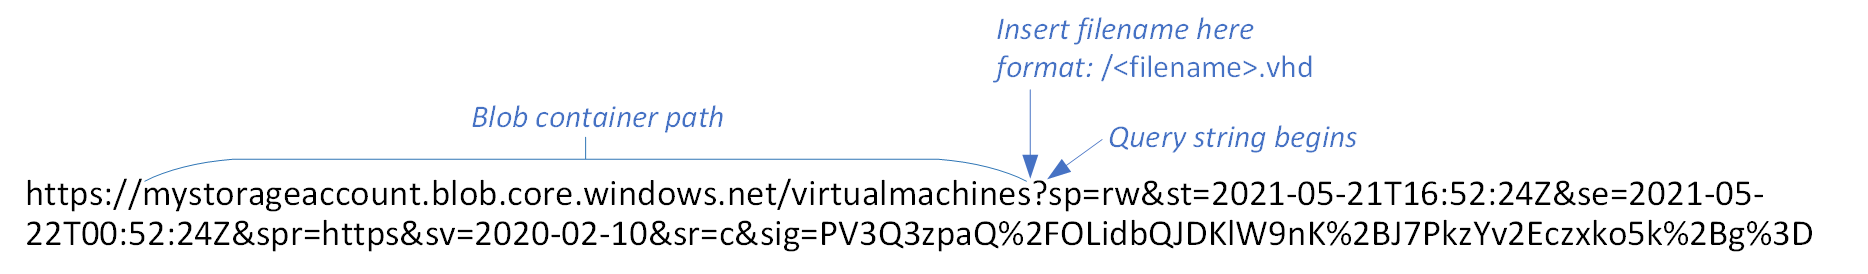 Grafika przedstawiająca adres URL sygnatury dostępu współdzielonego obiektu blob ze ścieżką kontenera i miejscem do wstawienia nowej nazwy pliku z etykietą